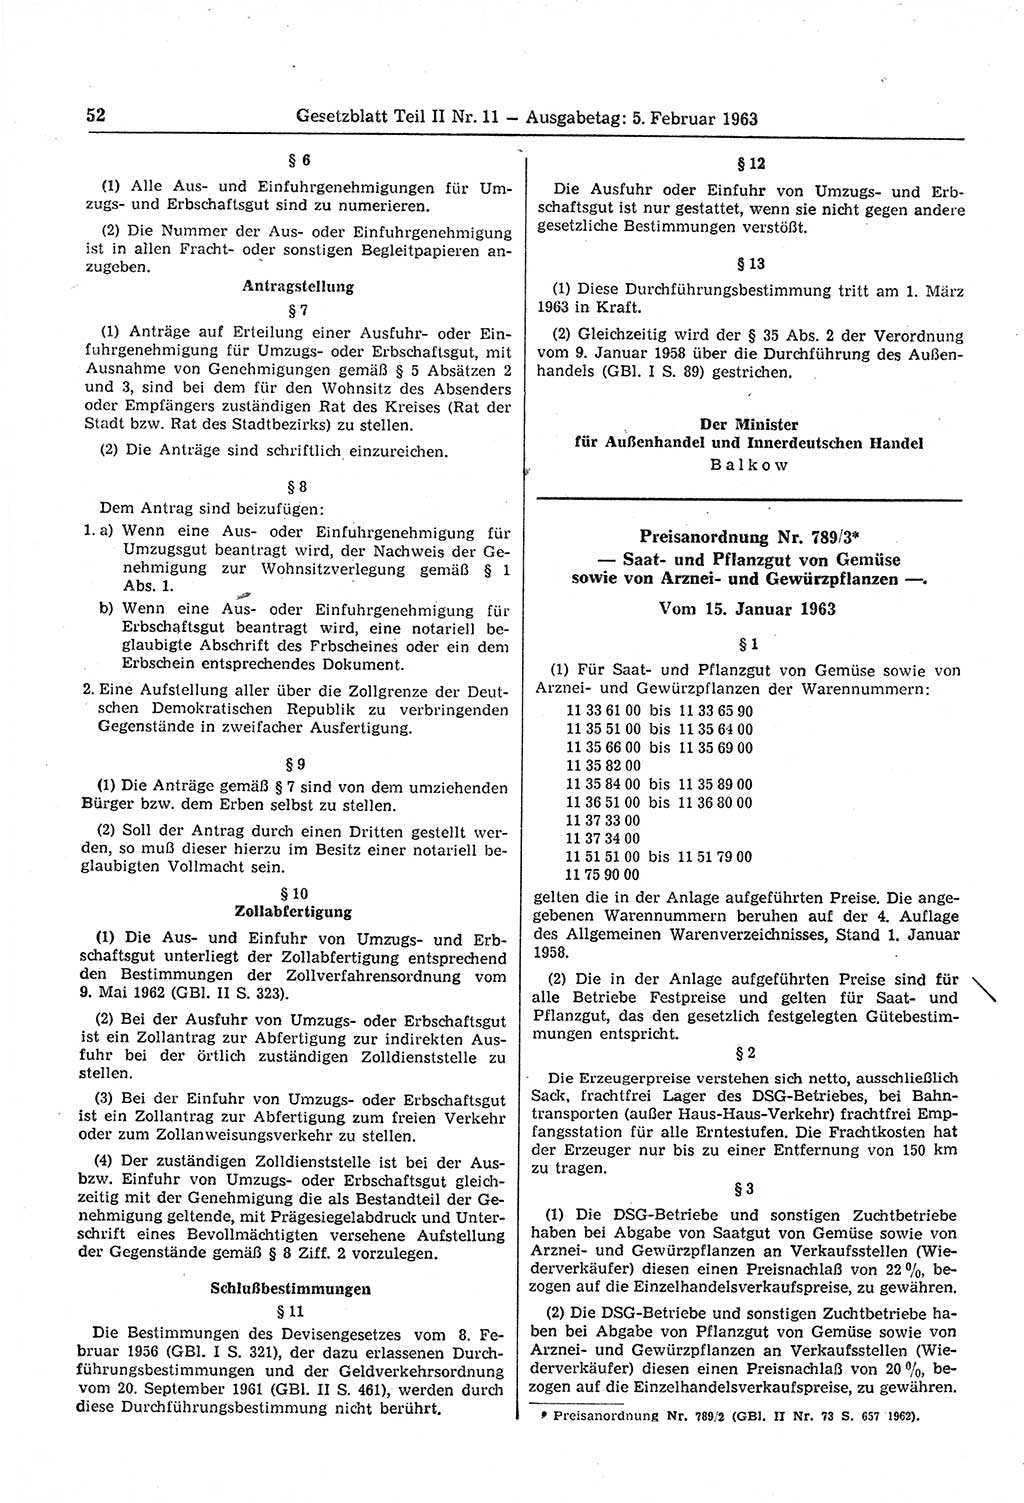 Gesetzblatt (GBl.) der Deutschen Demokratischen Republik (DDR) Teil ⅠⅠ 1963, Seite 52 (GBl. DDR ⅠⅠ 1963, S. 52)